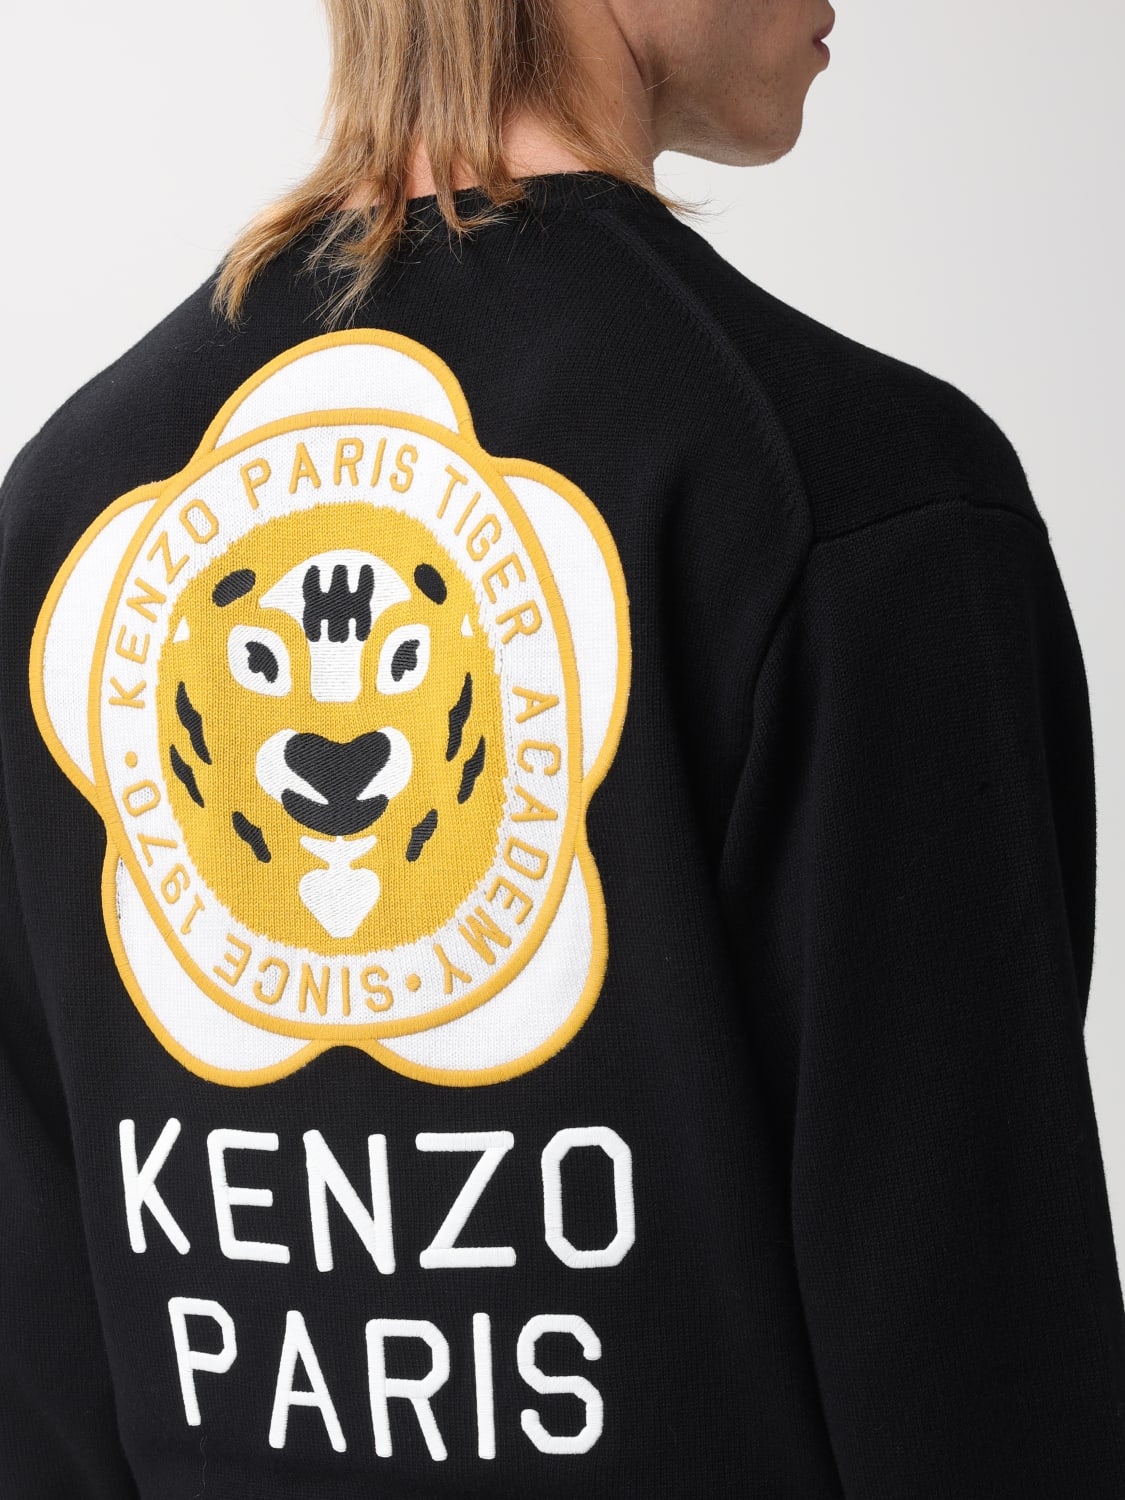 Kenzo Tiger Intarsia Sweater 6C 1986